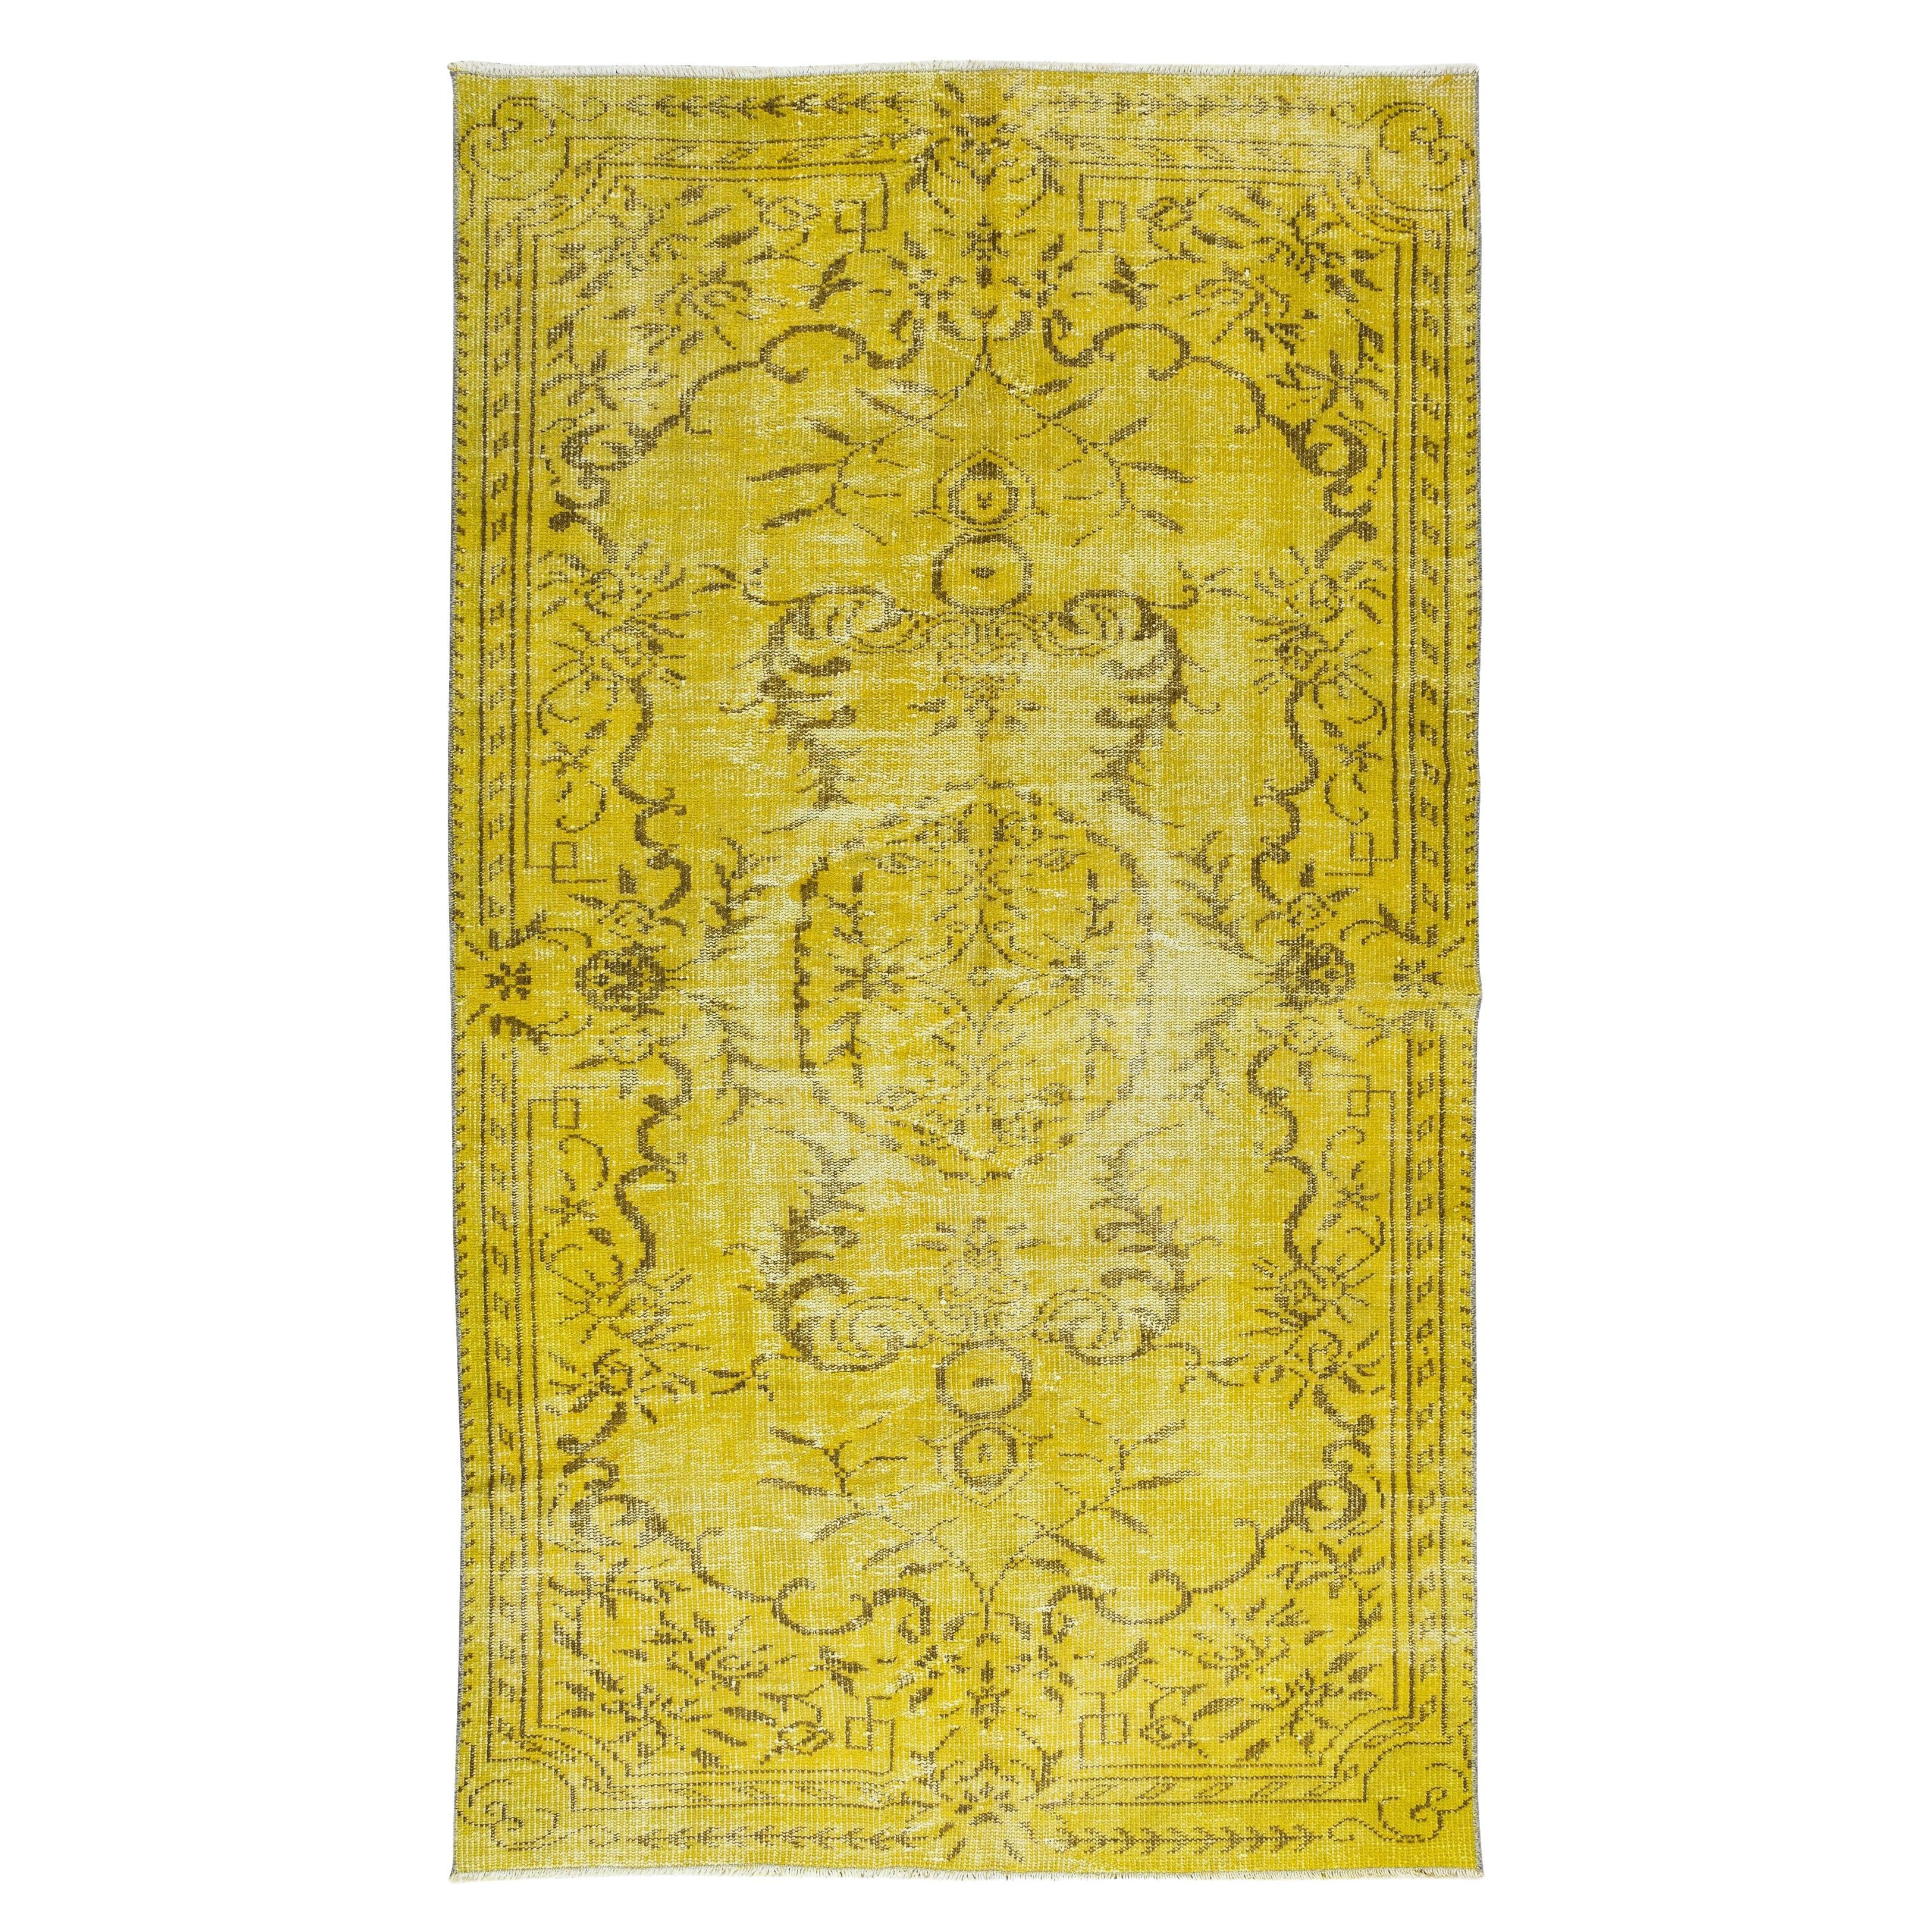 Handgefertigter türkischer Vintage-Teppich, 4,8x8,5 Fuß, moderner gelber Teppich